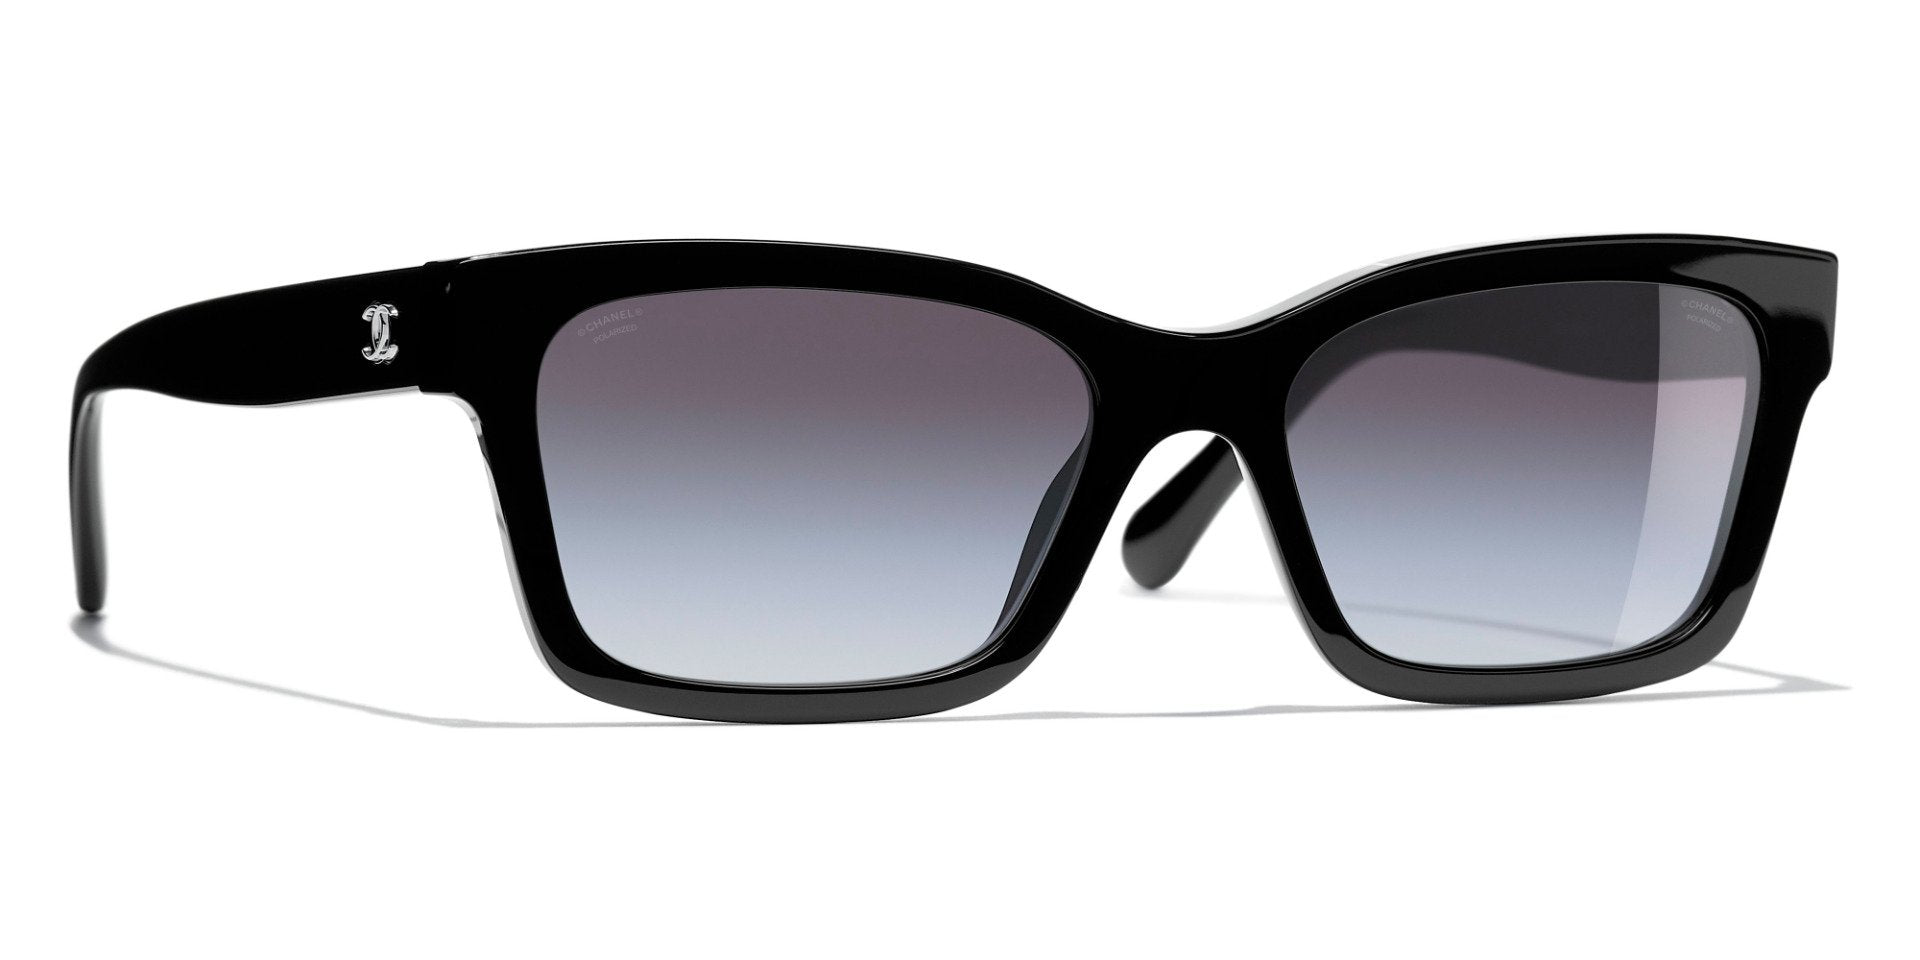 Mediate At tilpasse sig Bering strædet CHANEL 5417 Square Acetate Sunglasses | Fashion Eyewear